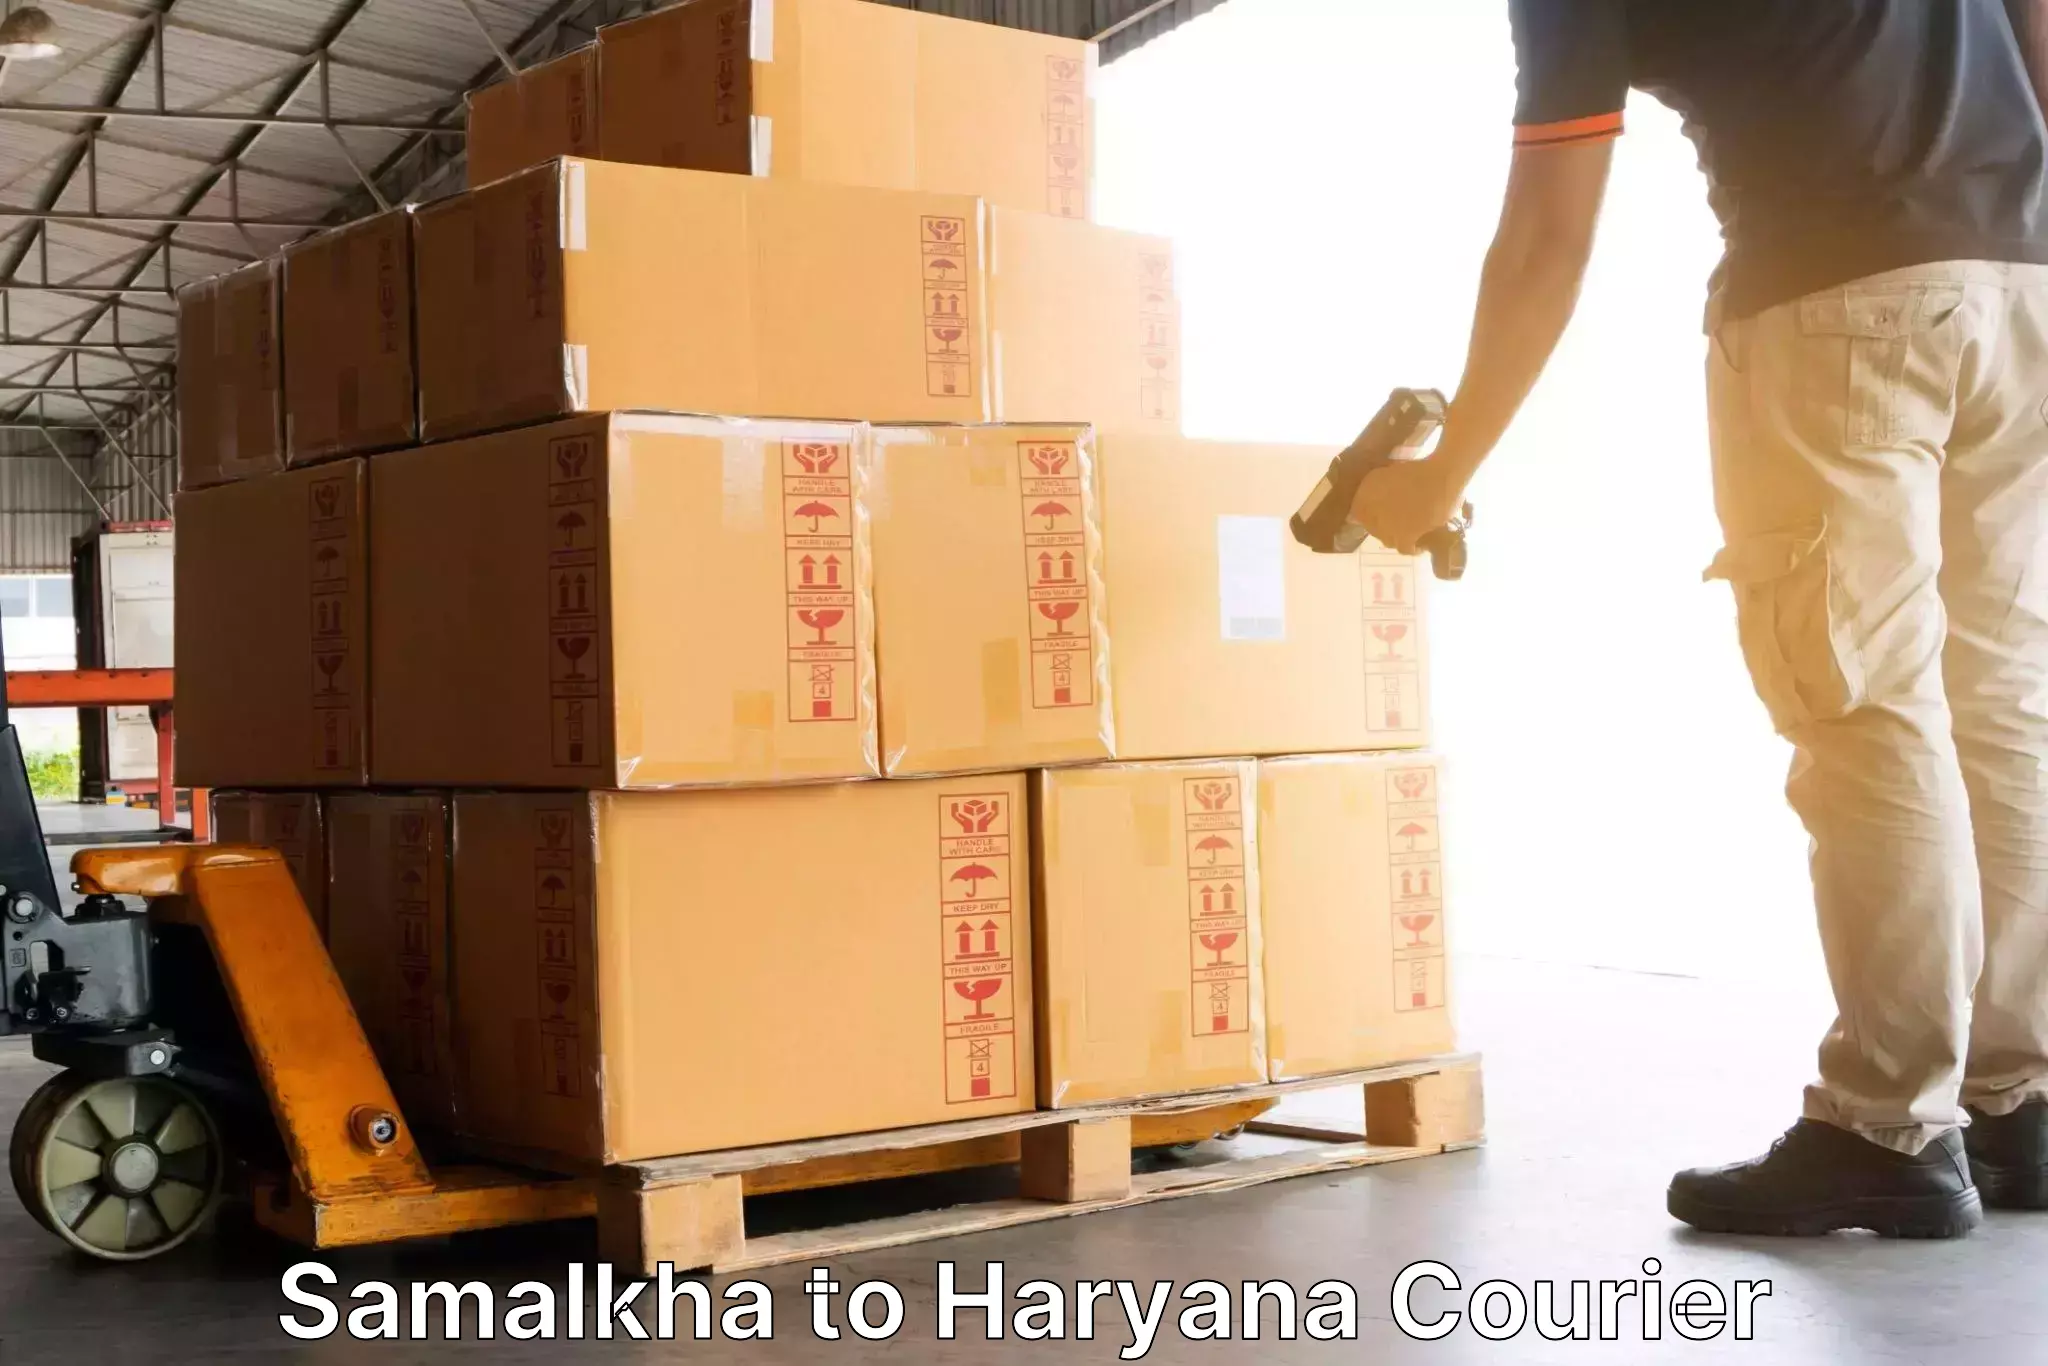 24/7 shipping services in Samalkha to Mahendragarh